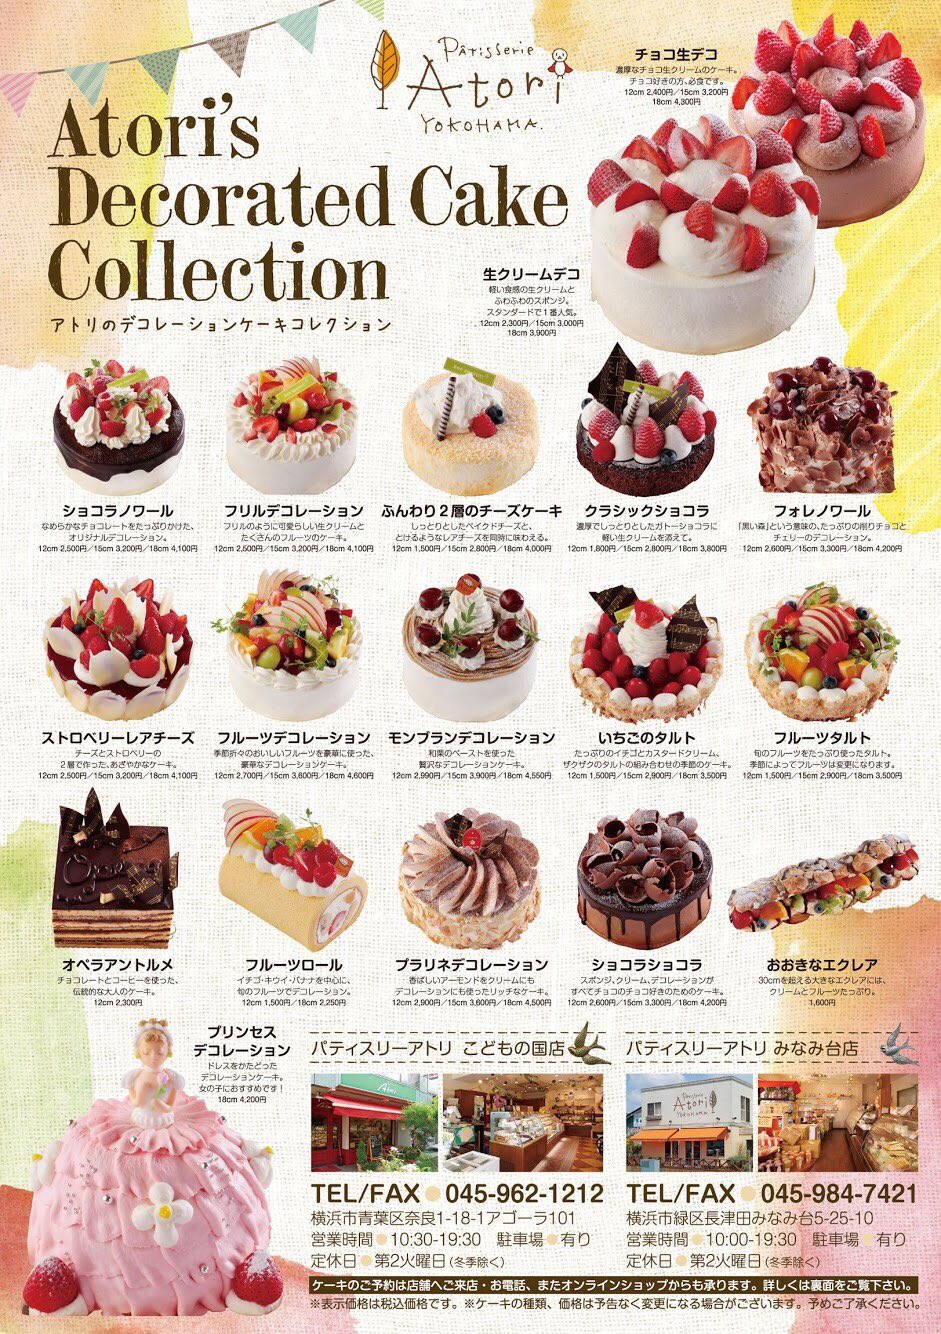 創作菓子アトリ 横浜のケーキ屋 Twitter वर アトリではホールケーキを種類豊富にご用意しています 実は普段店頭のケースには登場しないレアな ケーキもあるんですよ 1年に1回のバースデーパーティでは 主役の方に好きなケーキを選んでもらうのもいいですね 要